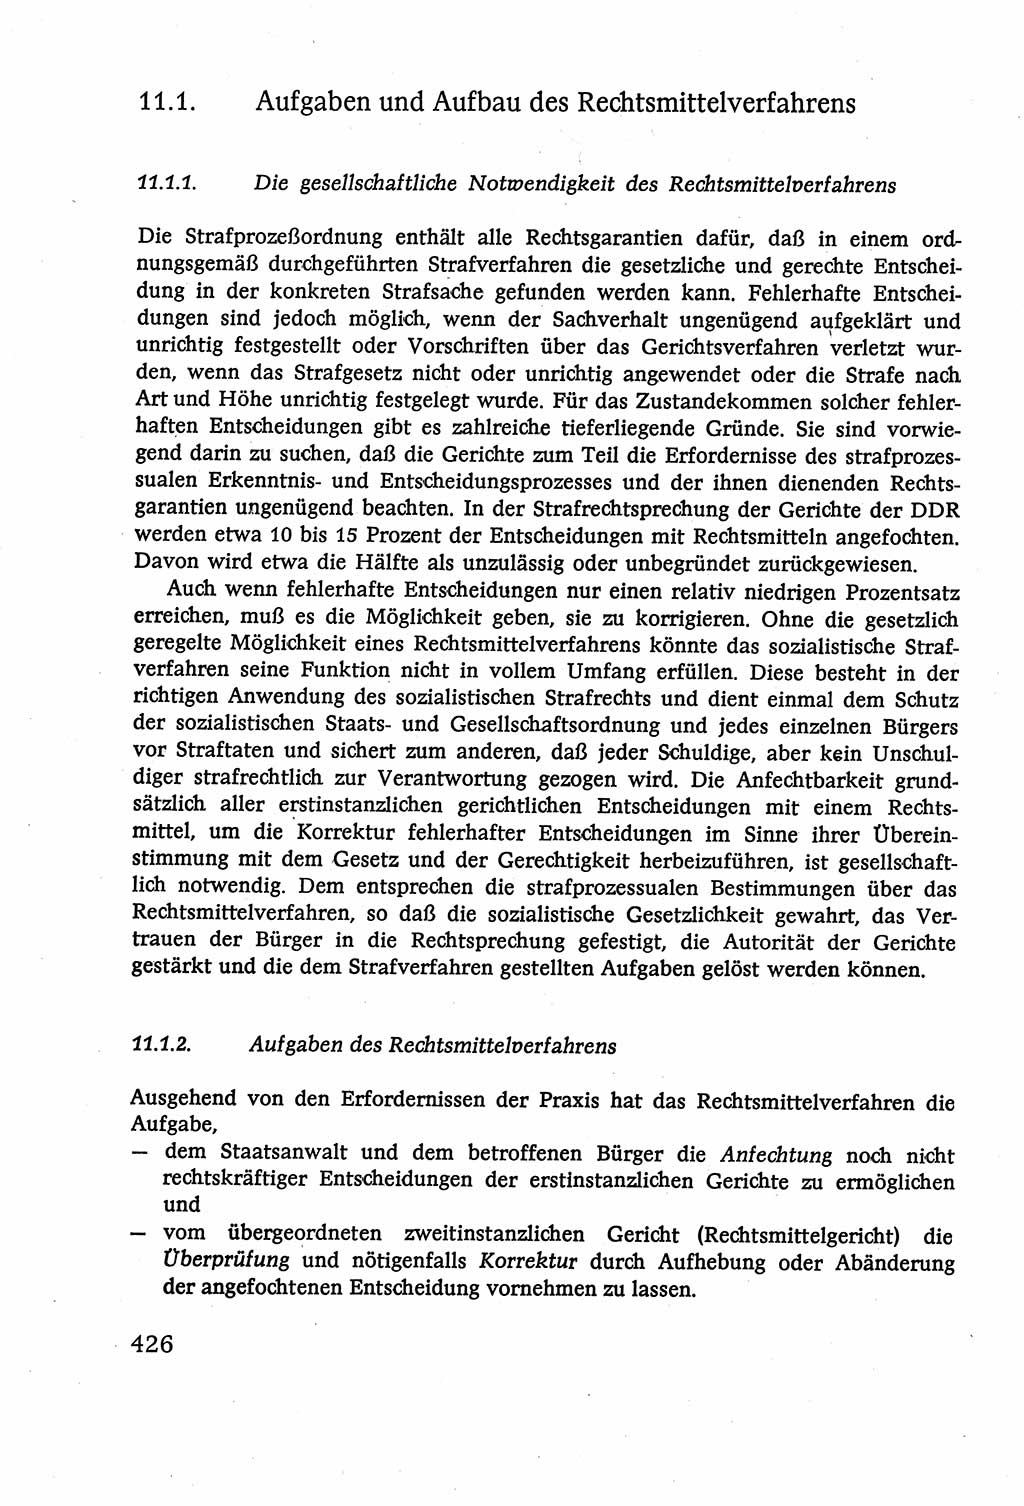 Strafverfahrensrecht [Deutsche Demokratische Republik (DDR)], Lehrbuch 1977, Seite 426 (Strafverf.-R. DDR Lb. 1977, S. 426)